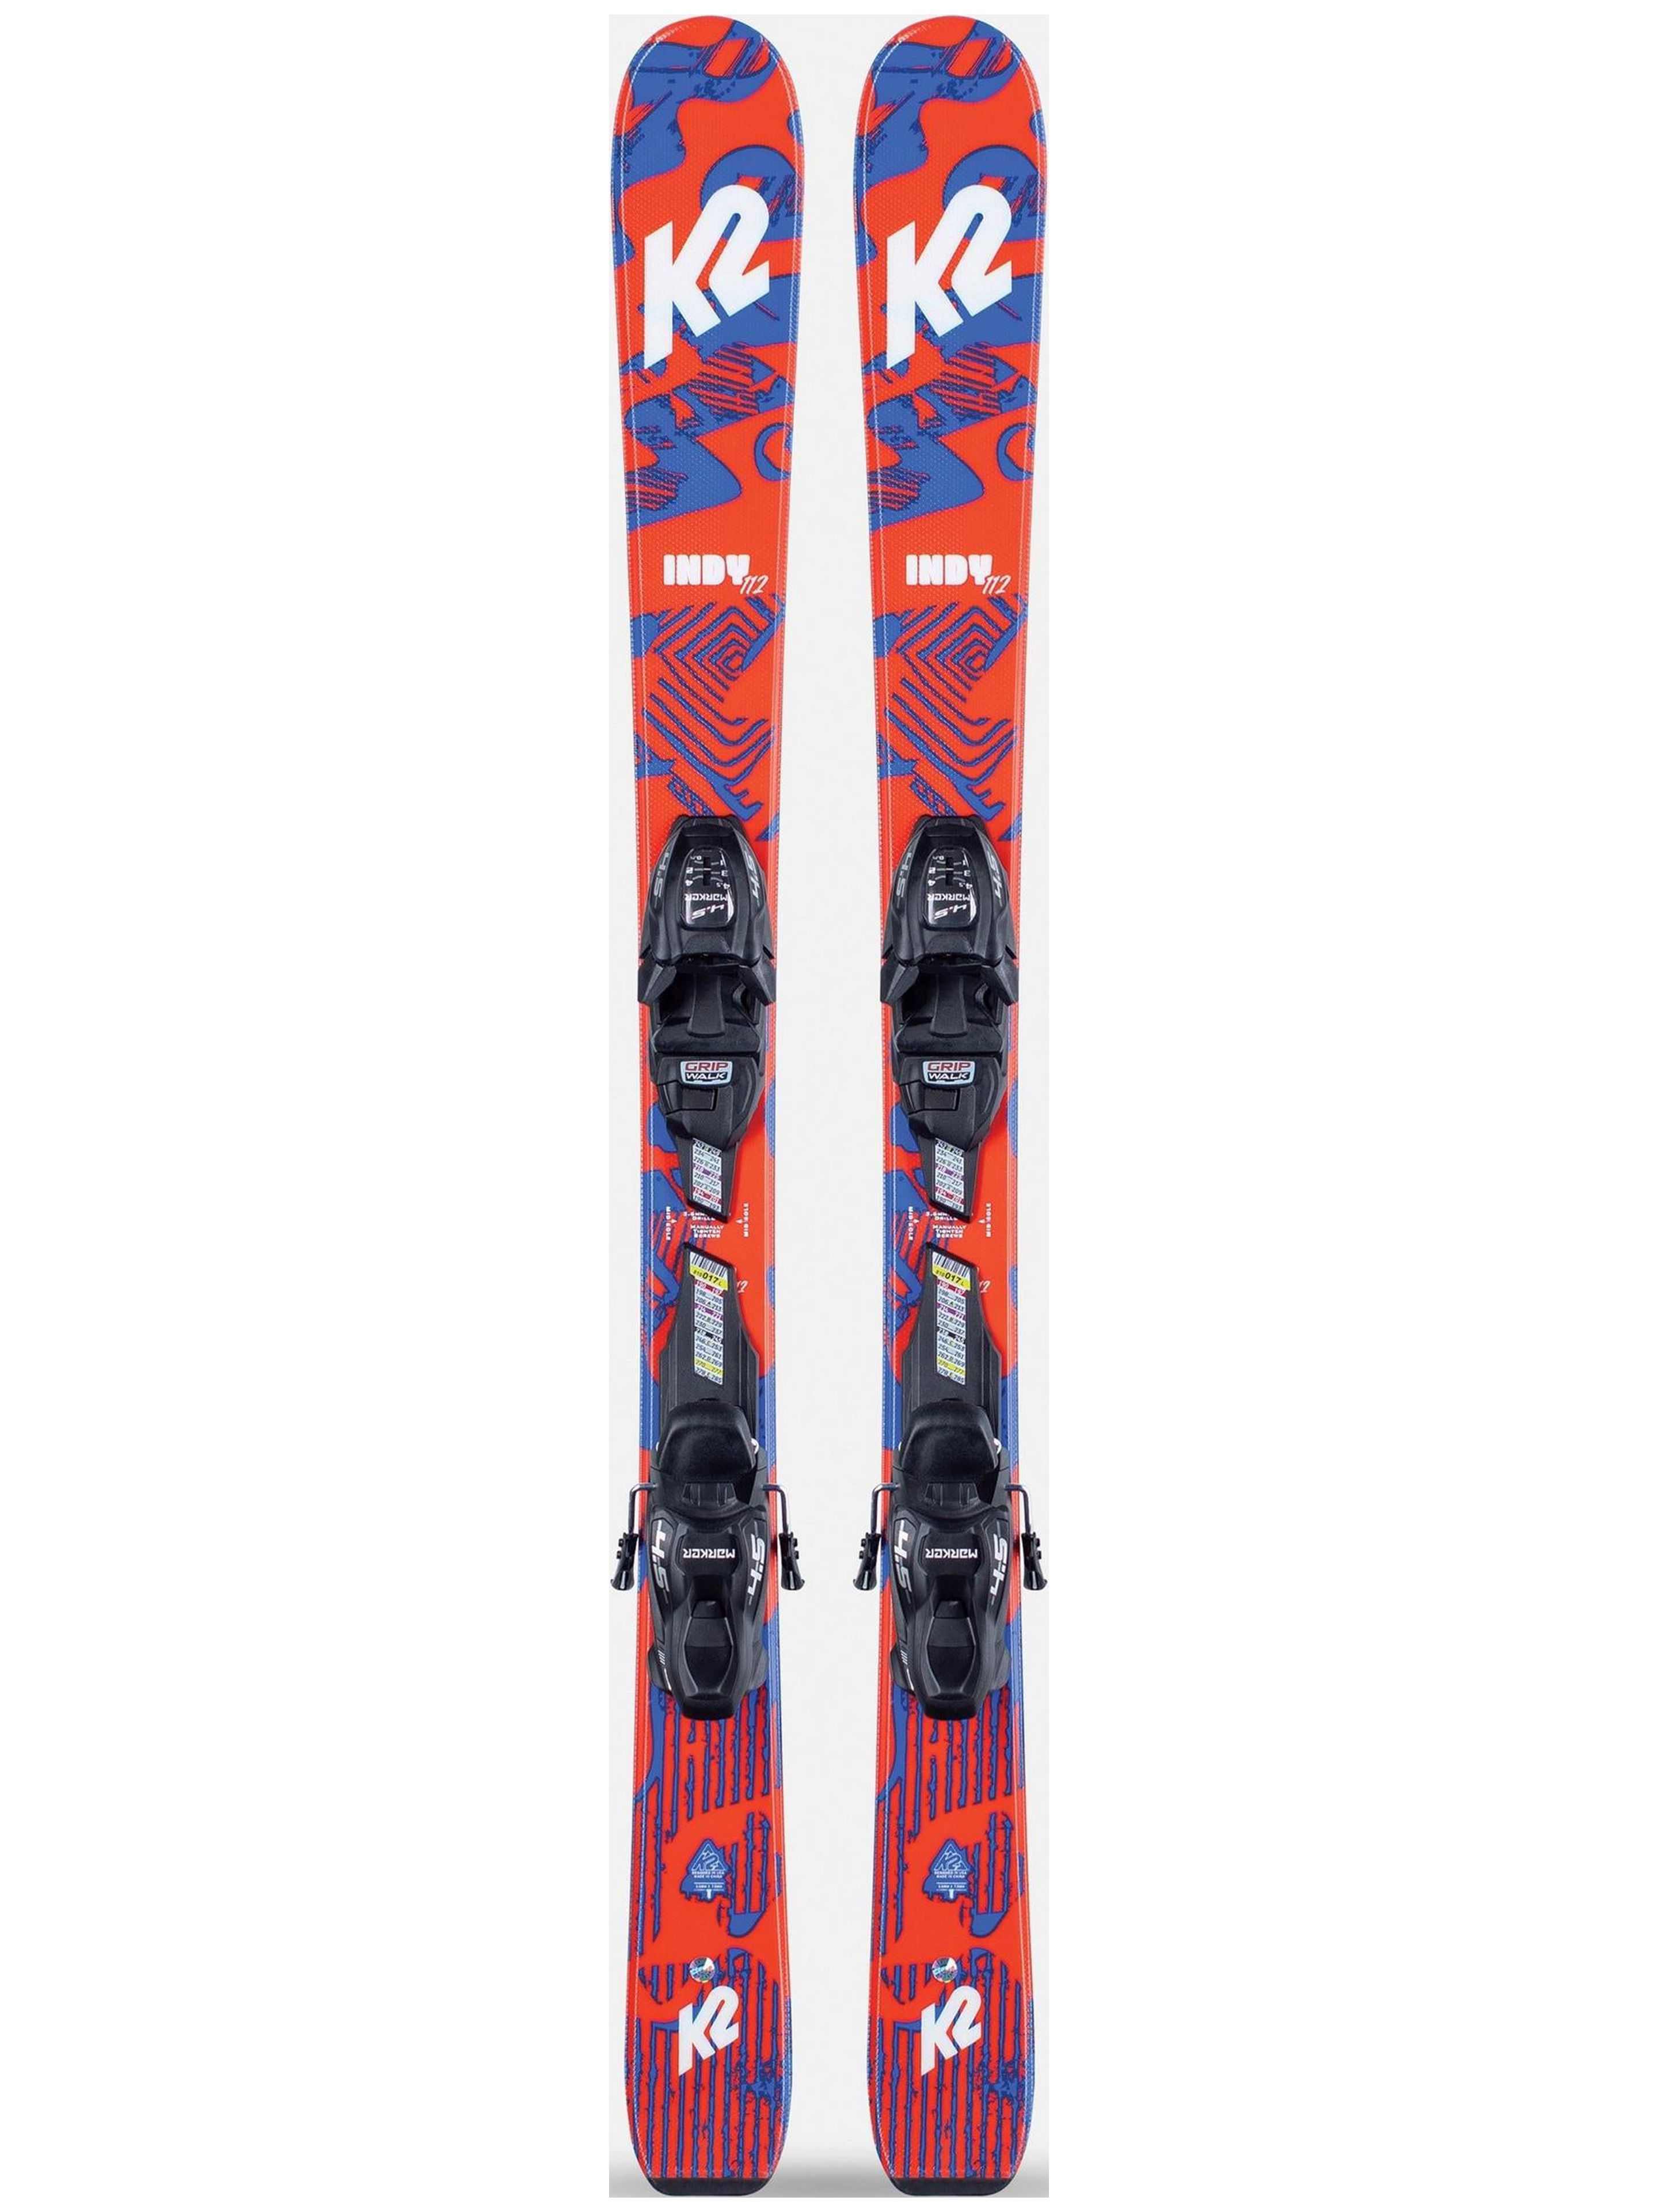 K2 Indy Jr Skis + FDT Bindings - 2022 - Boys - image 1 of 3